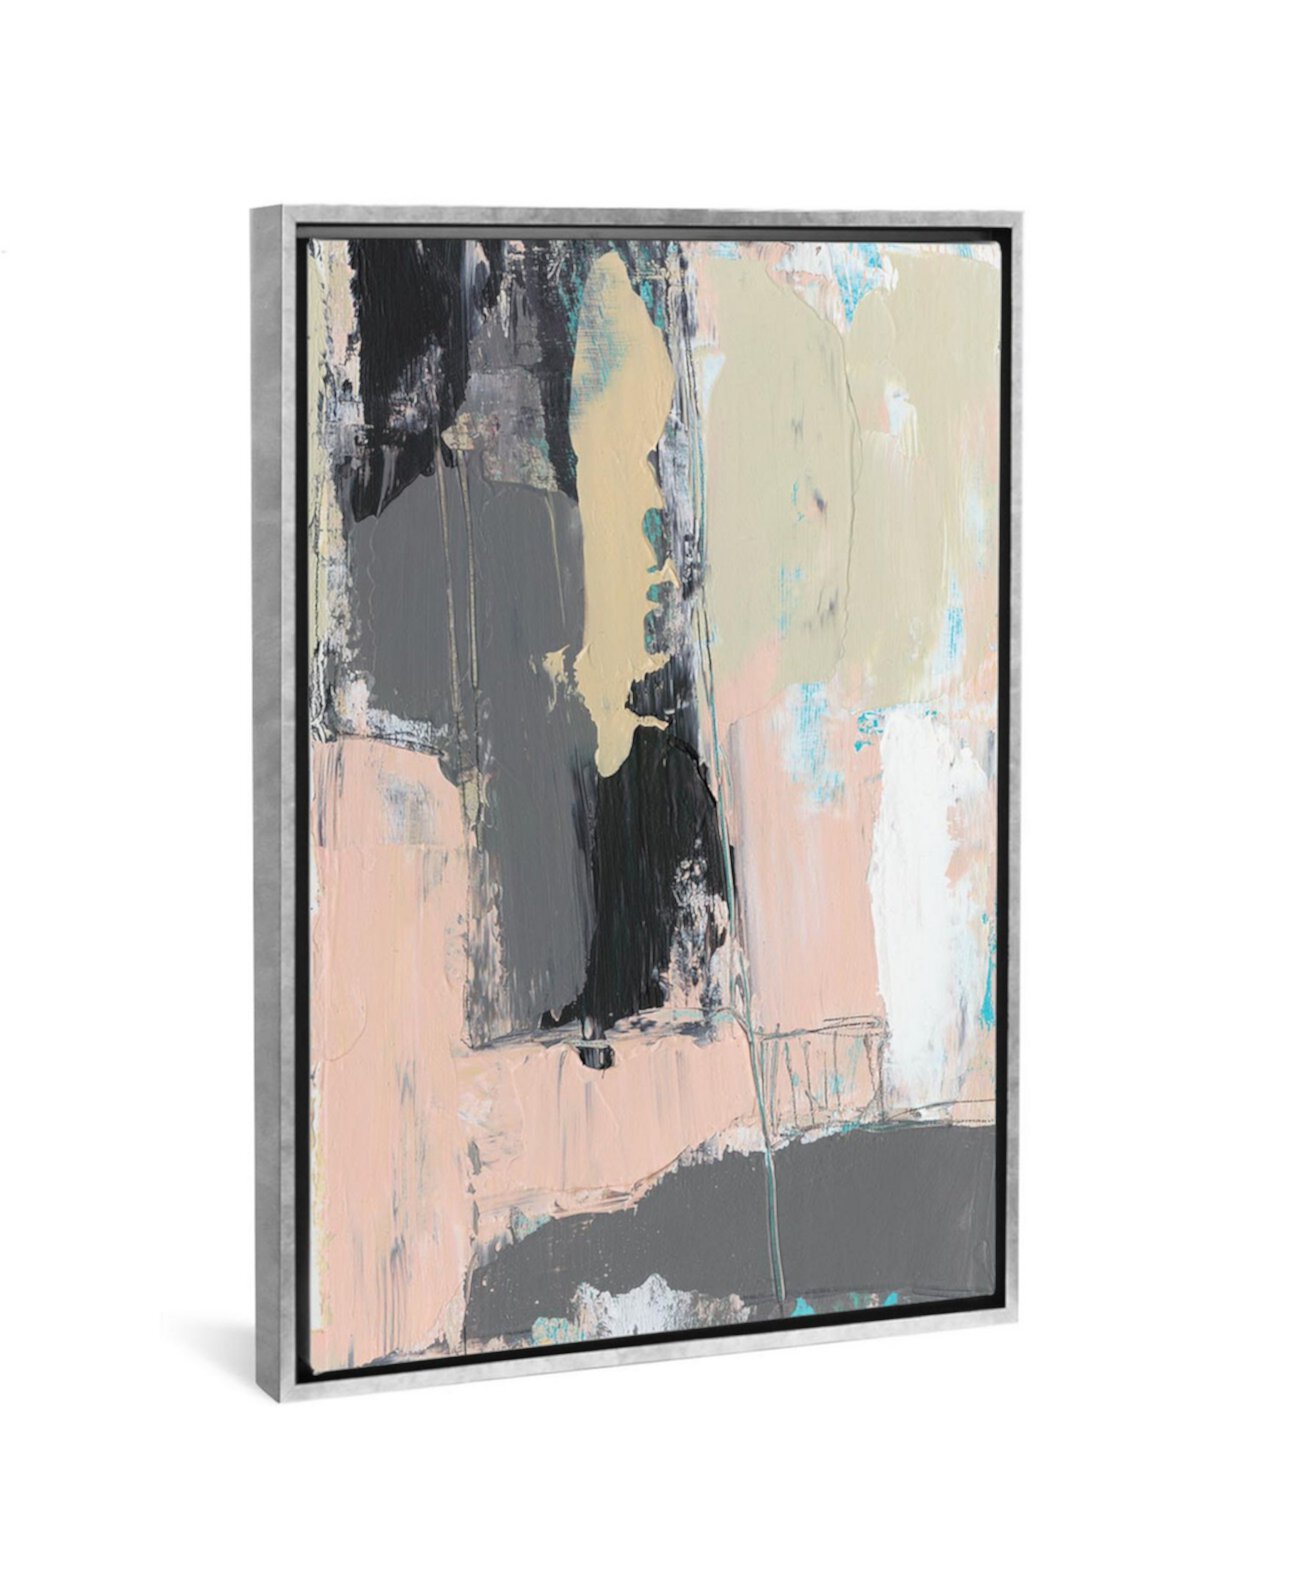 Картина на холсте «Pink-A-Boo III» от Дженнифер Голдбергер - 26 дюймов x 18 дюймов x 0,75 дюйма ICanvas